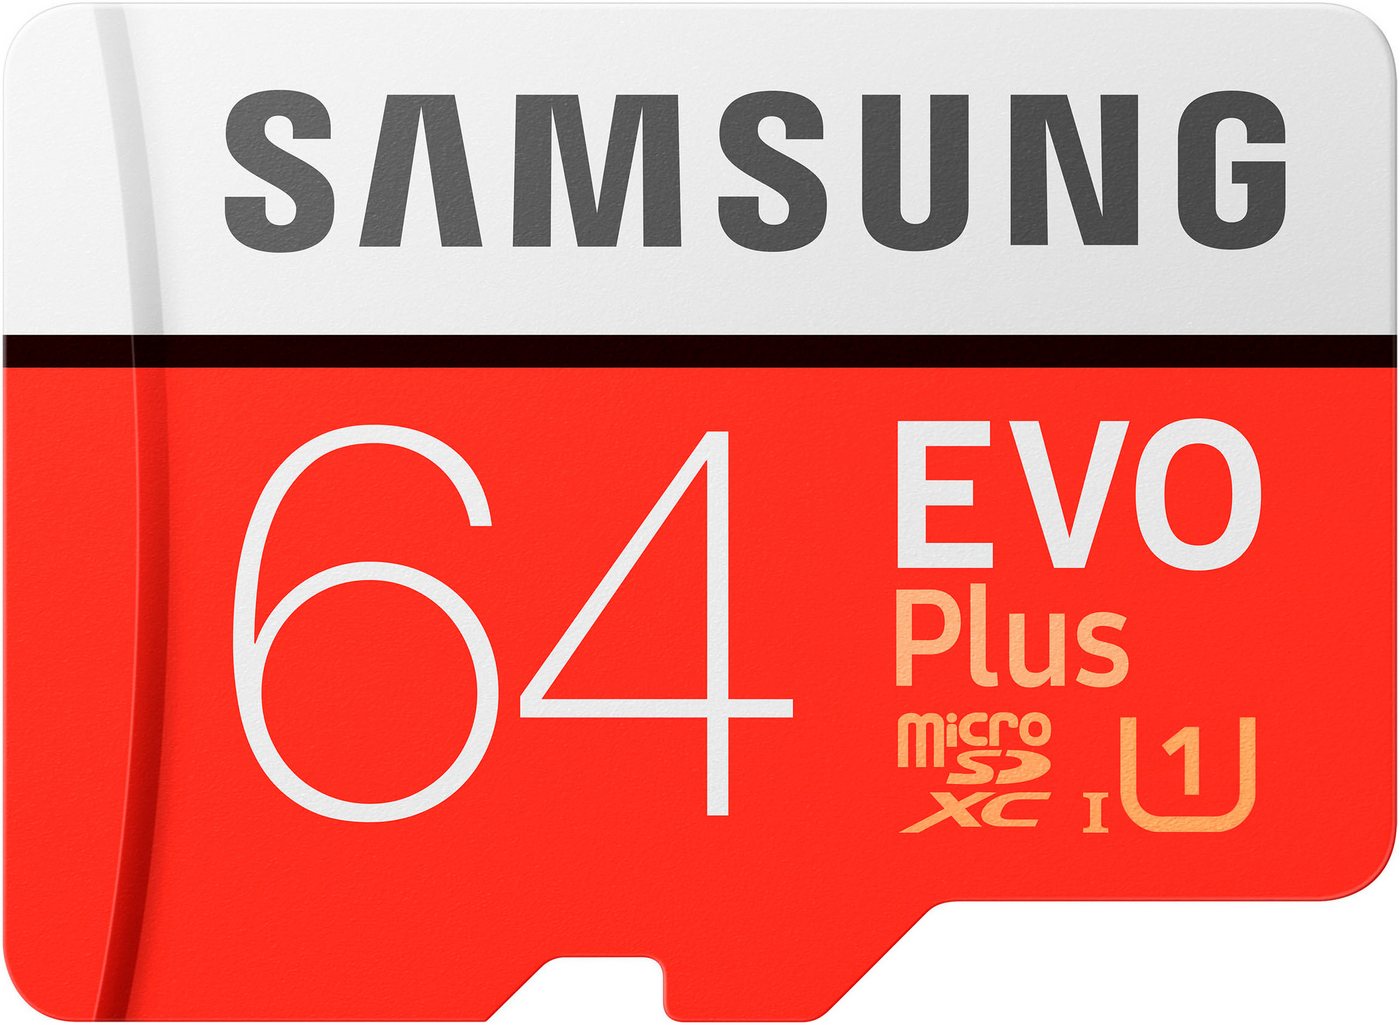 Samsung Evo Plus 64GB Speicherkarte (64 GB, UHS-I Class 10, 100 MB/s Lesegeschwindigkeit) von Samsung